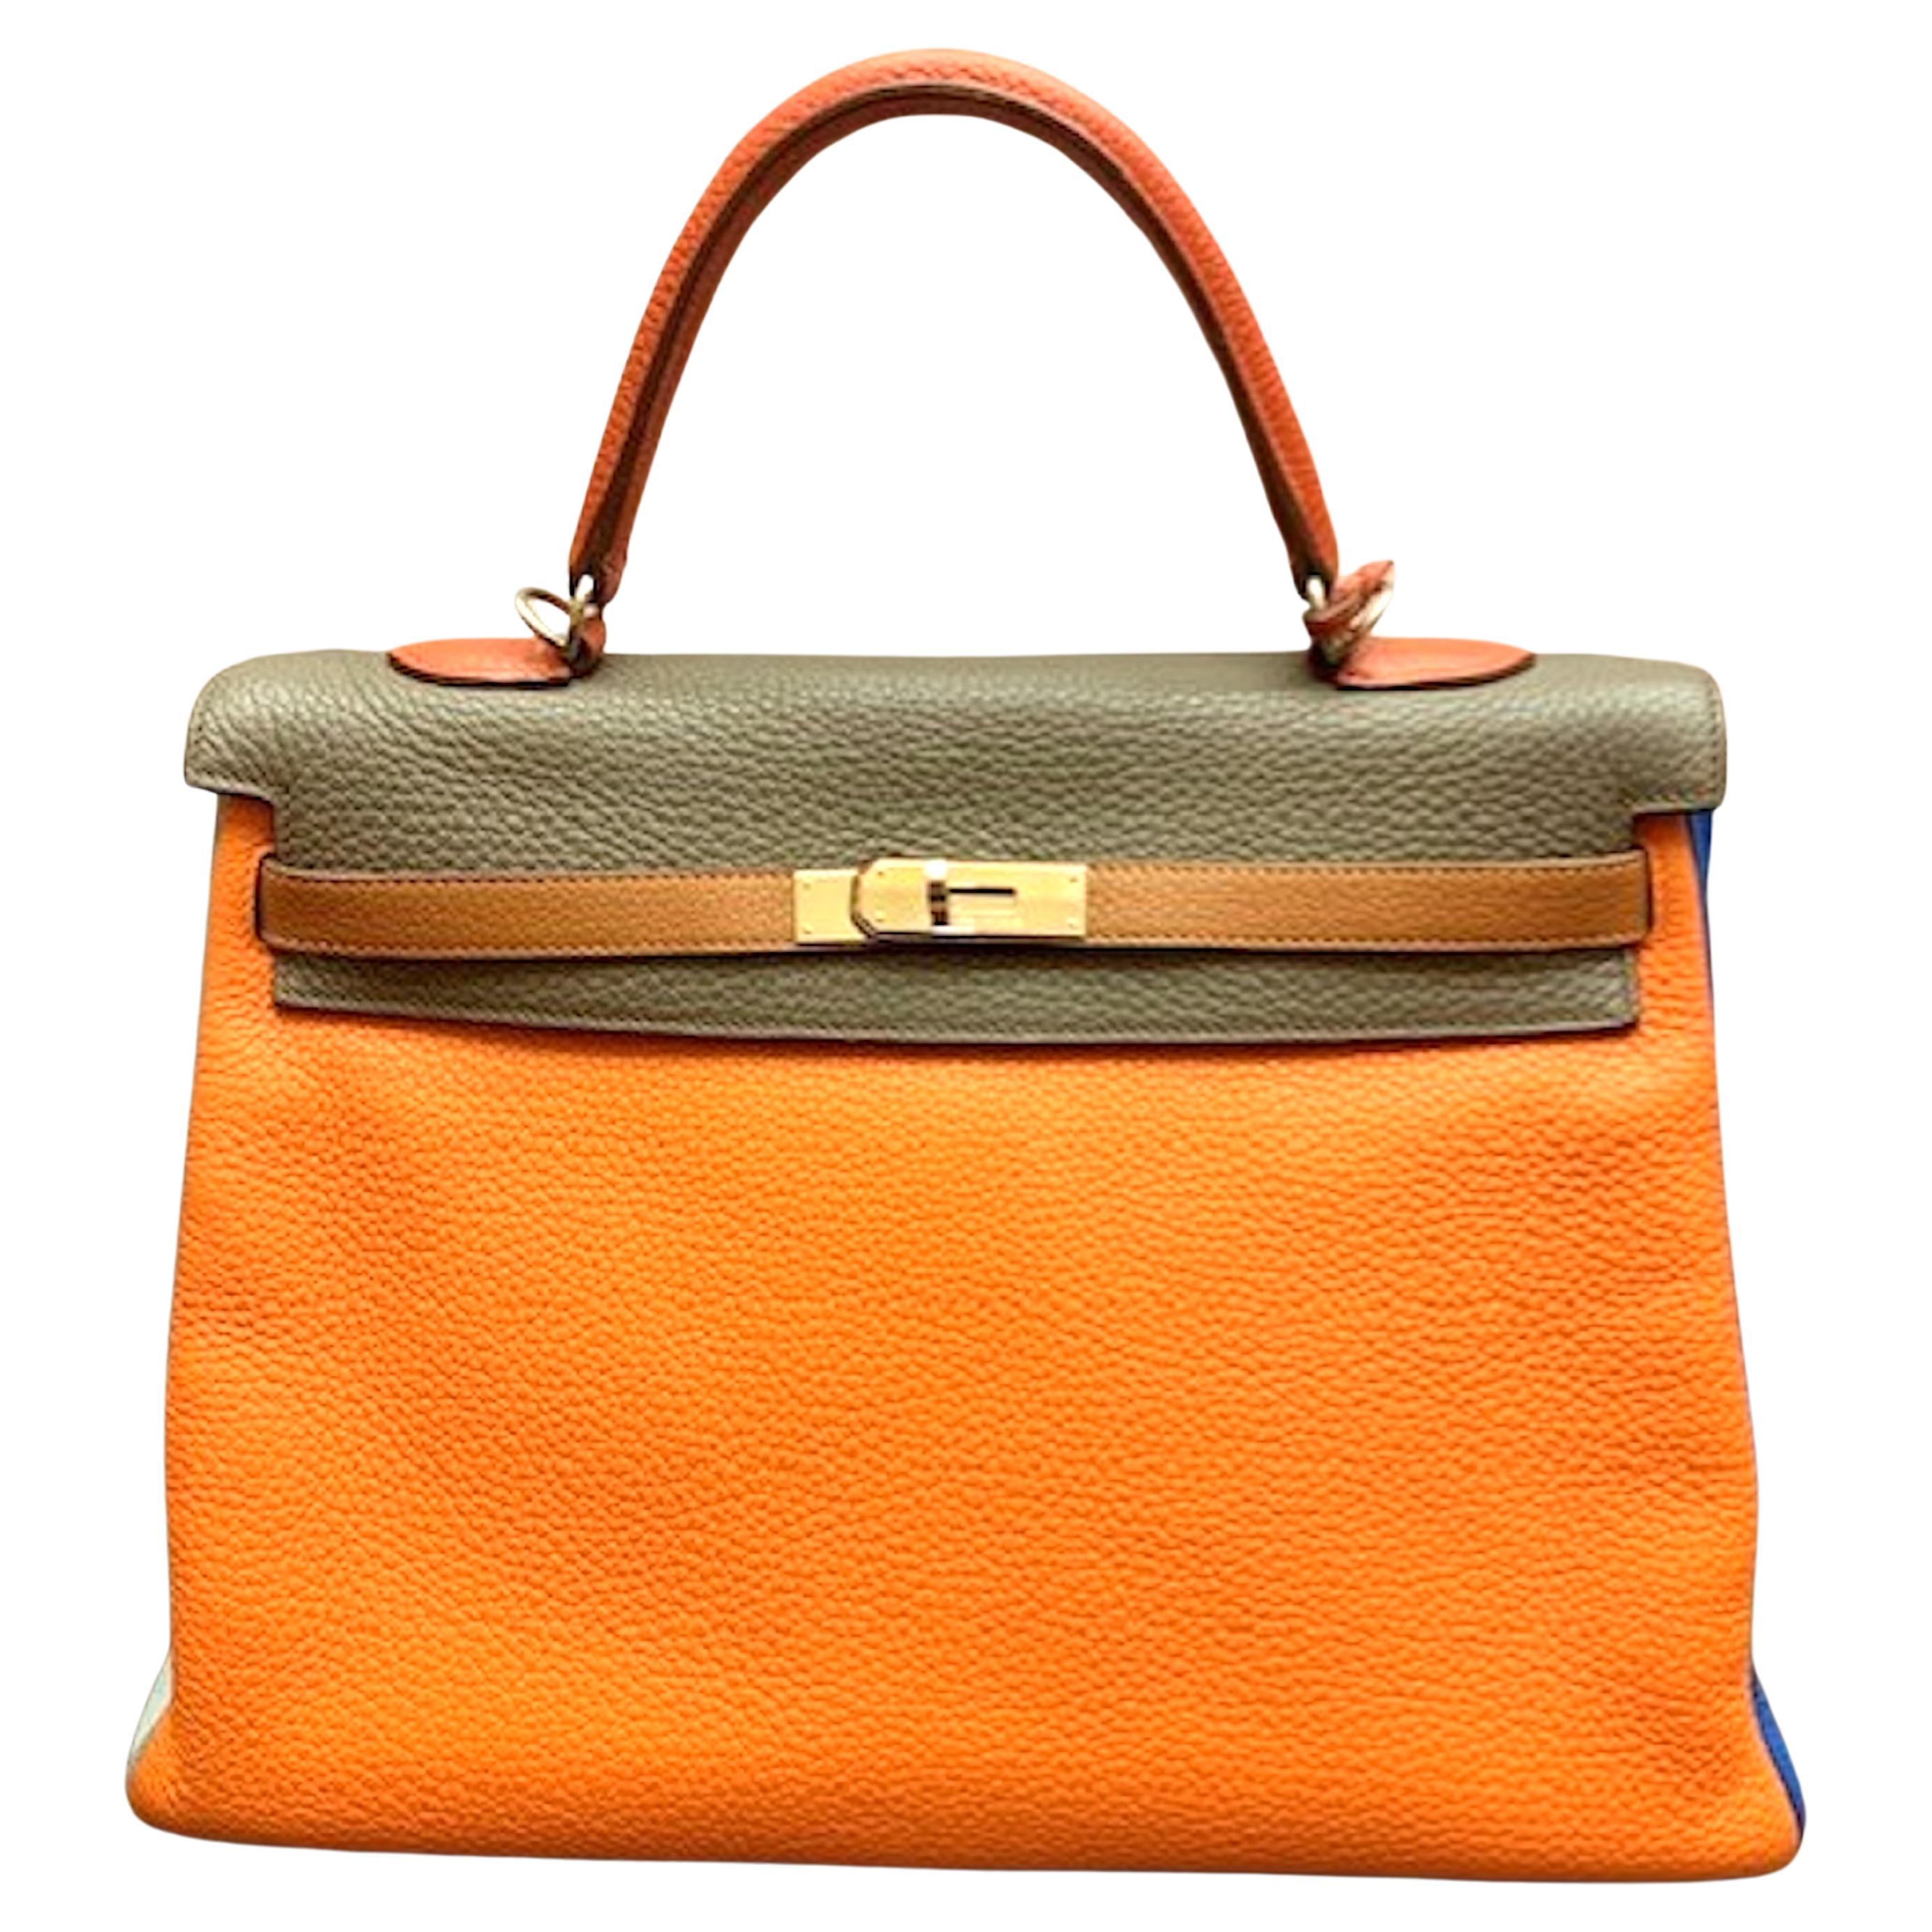 Hermes  2012 Kelly 35 Arlequin Bag Limited Edition. For Sale